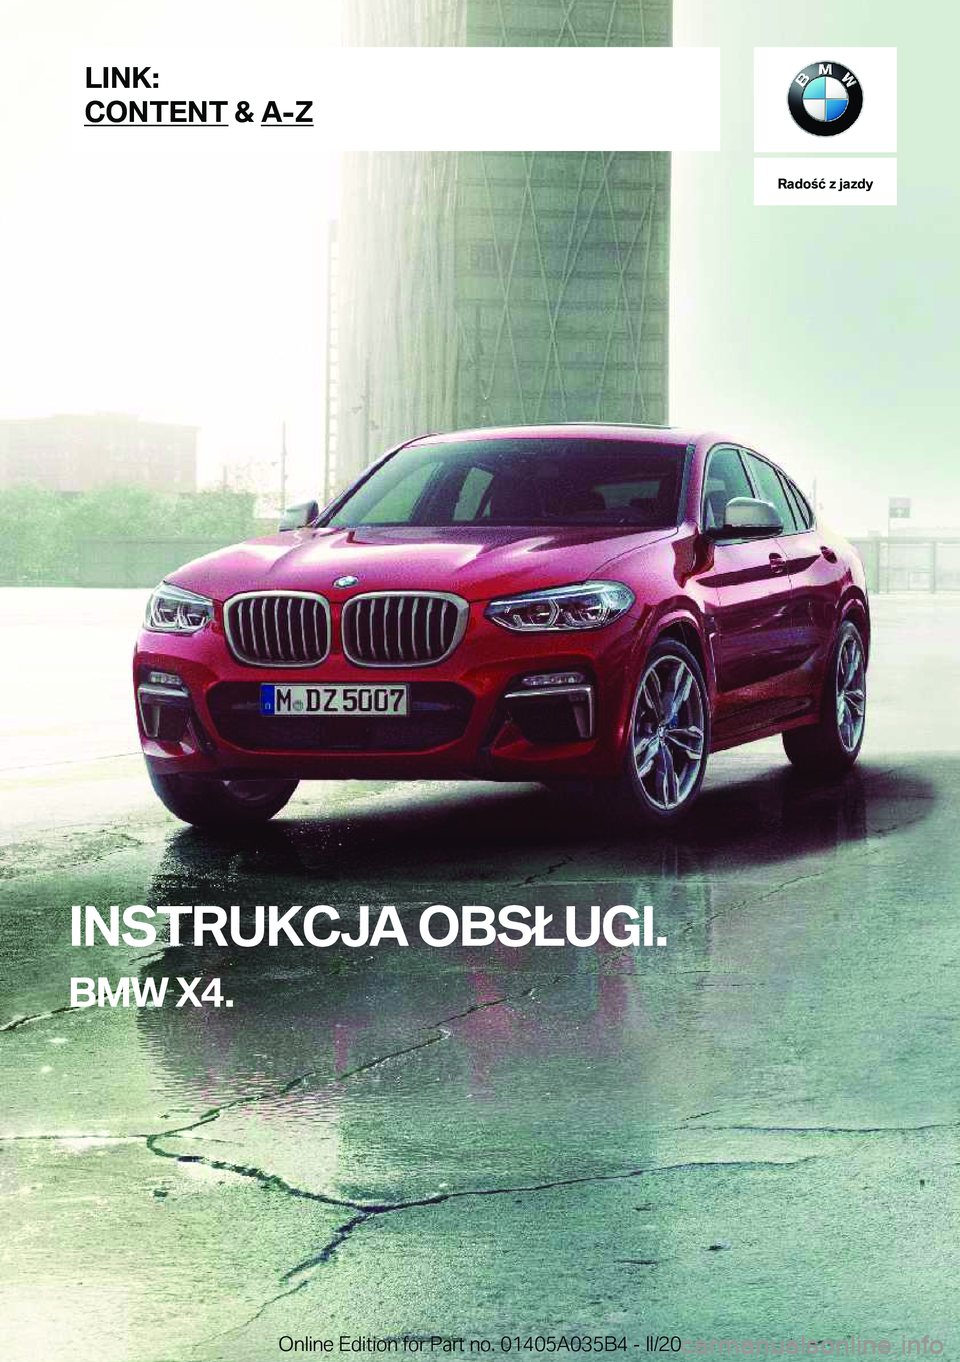 BMW X4 2020  Instrukcja obsługi (in Polish) �R�a�d�o�ć��z��j�a�z�d�y
�I�N�S�T�R�U�K�C�J�A��O�B�S�Ł�U�G�I�.
�B�M�W��X�4�.�L�I�N�K�:
�C�O�N�T�E�N�T��&��A�-�Z�O�n�l�i�n�e��E�d�i�t�i�o�n��f�o�r��P�a�r�t��n�o�.��0�1�4�0�5�A�0�3�5�B�4�